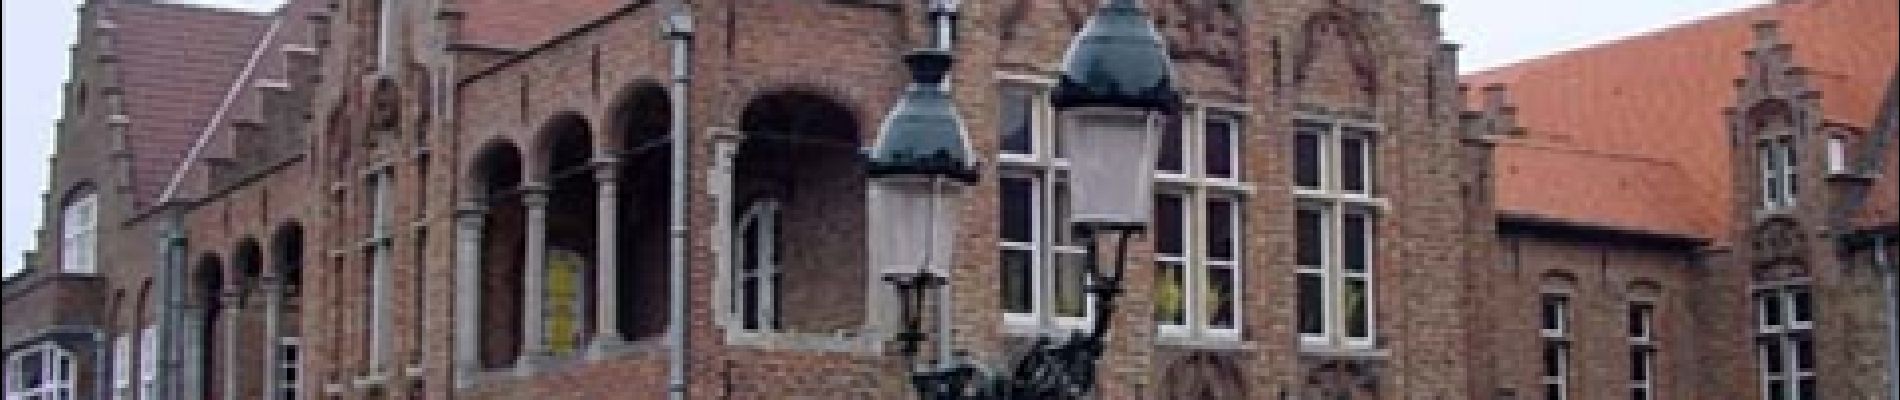 Randonnée Marche Bruges - Bruges, une ville fière de son Patrimoine mondial - Photo